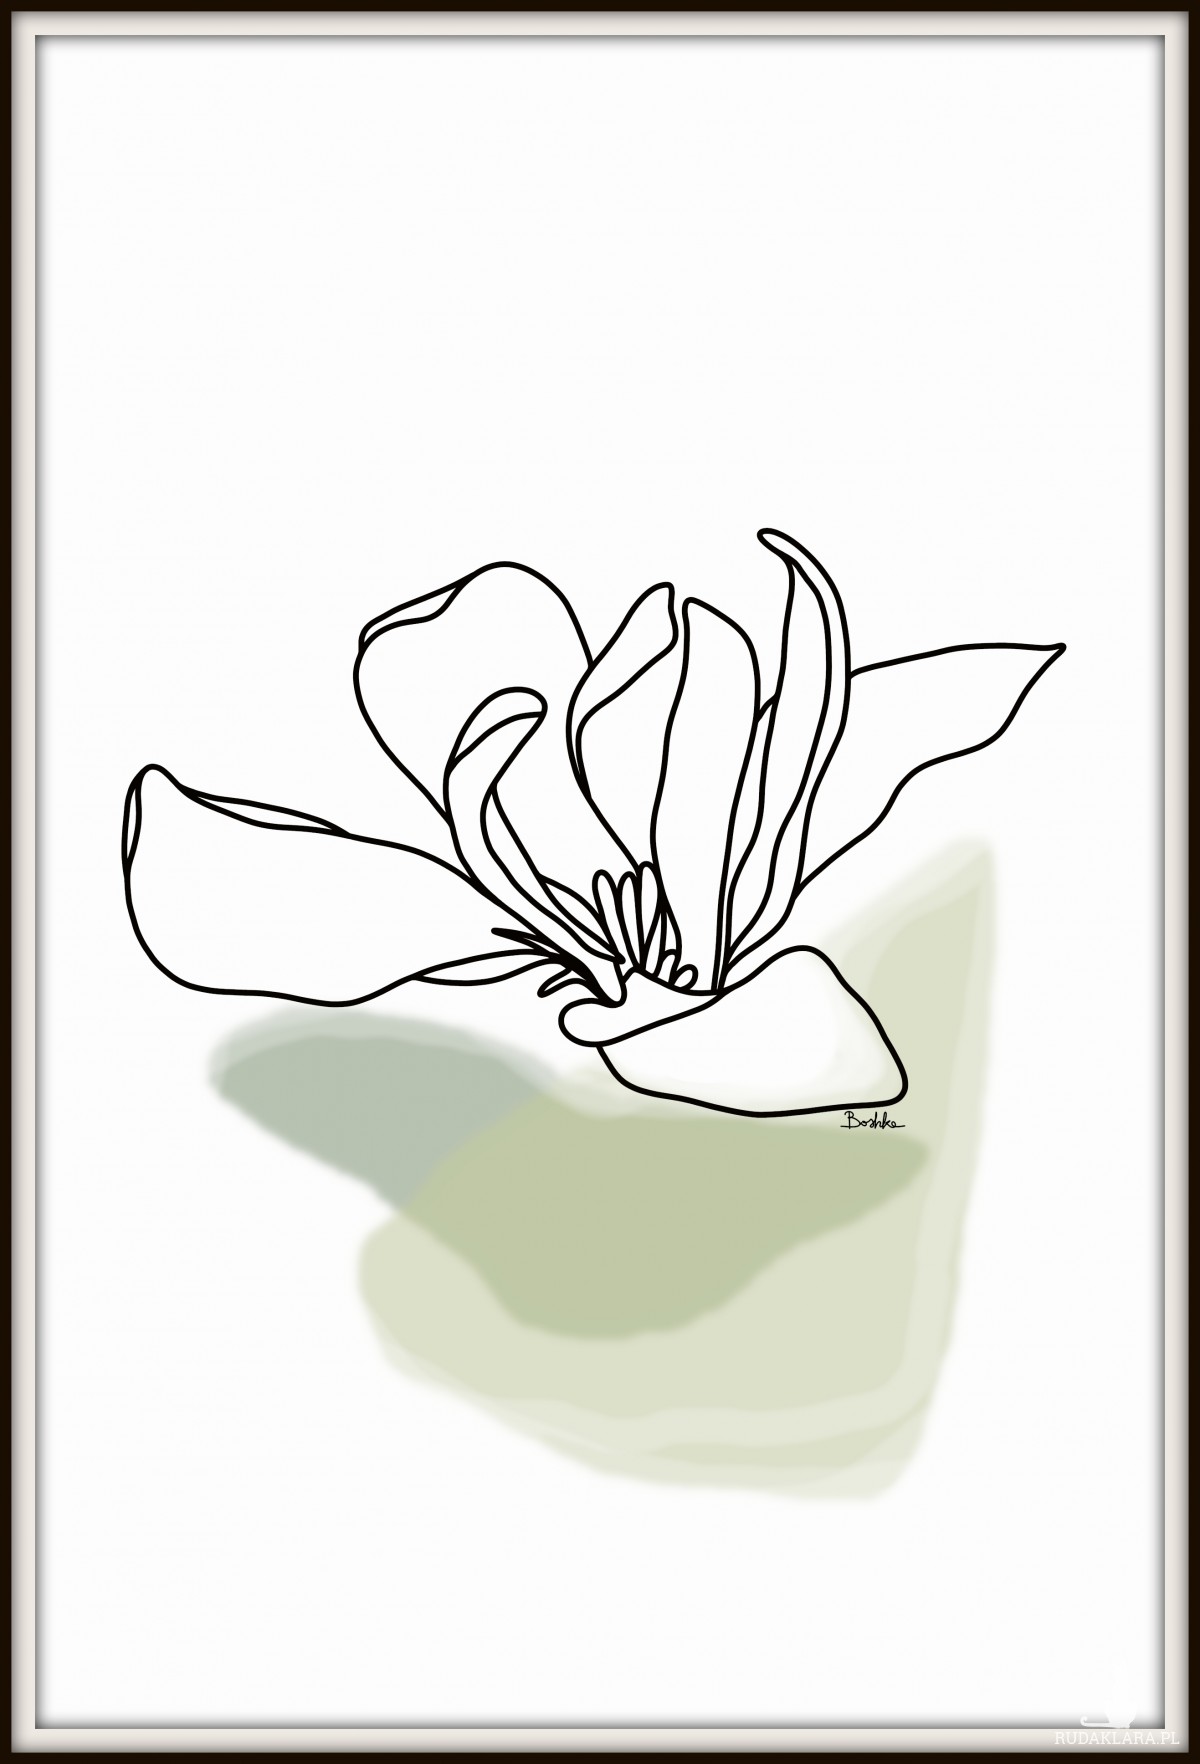 Grafika "Magnolia" plik cyfrowy do pobrania, wydrukuj jak chcesz